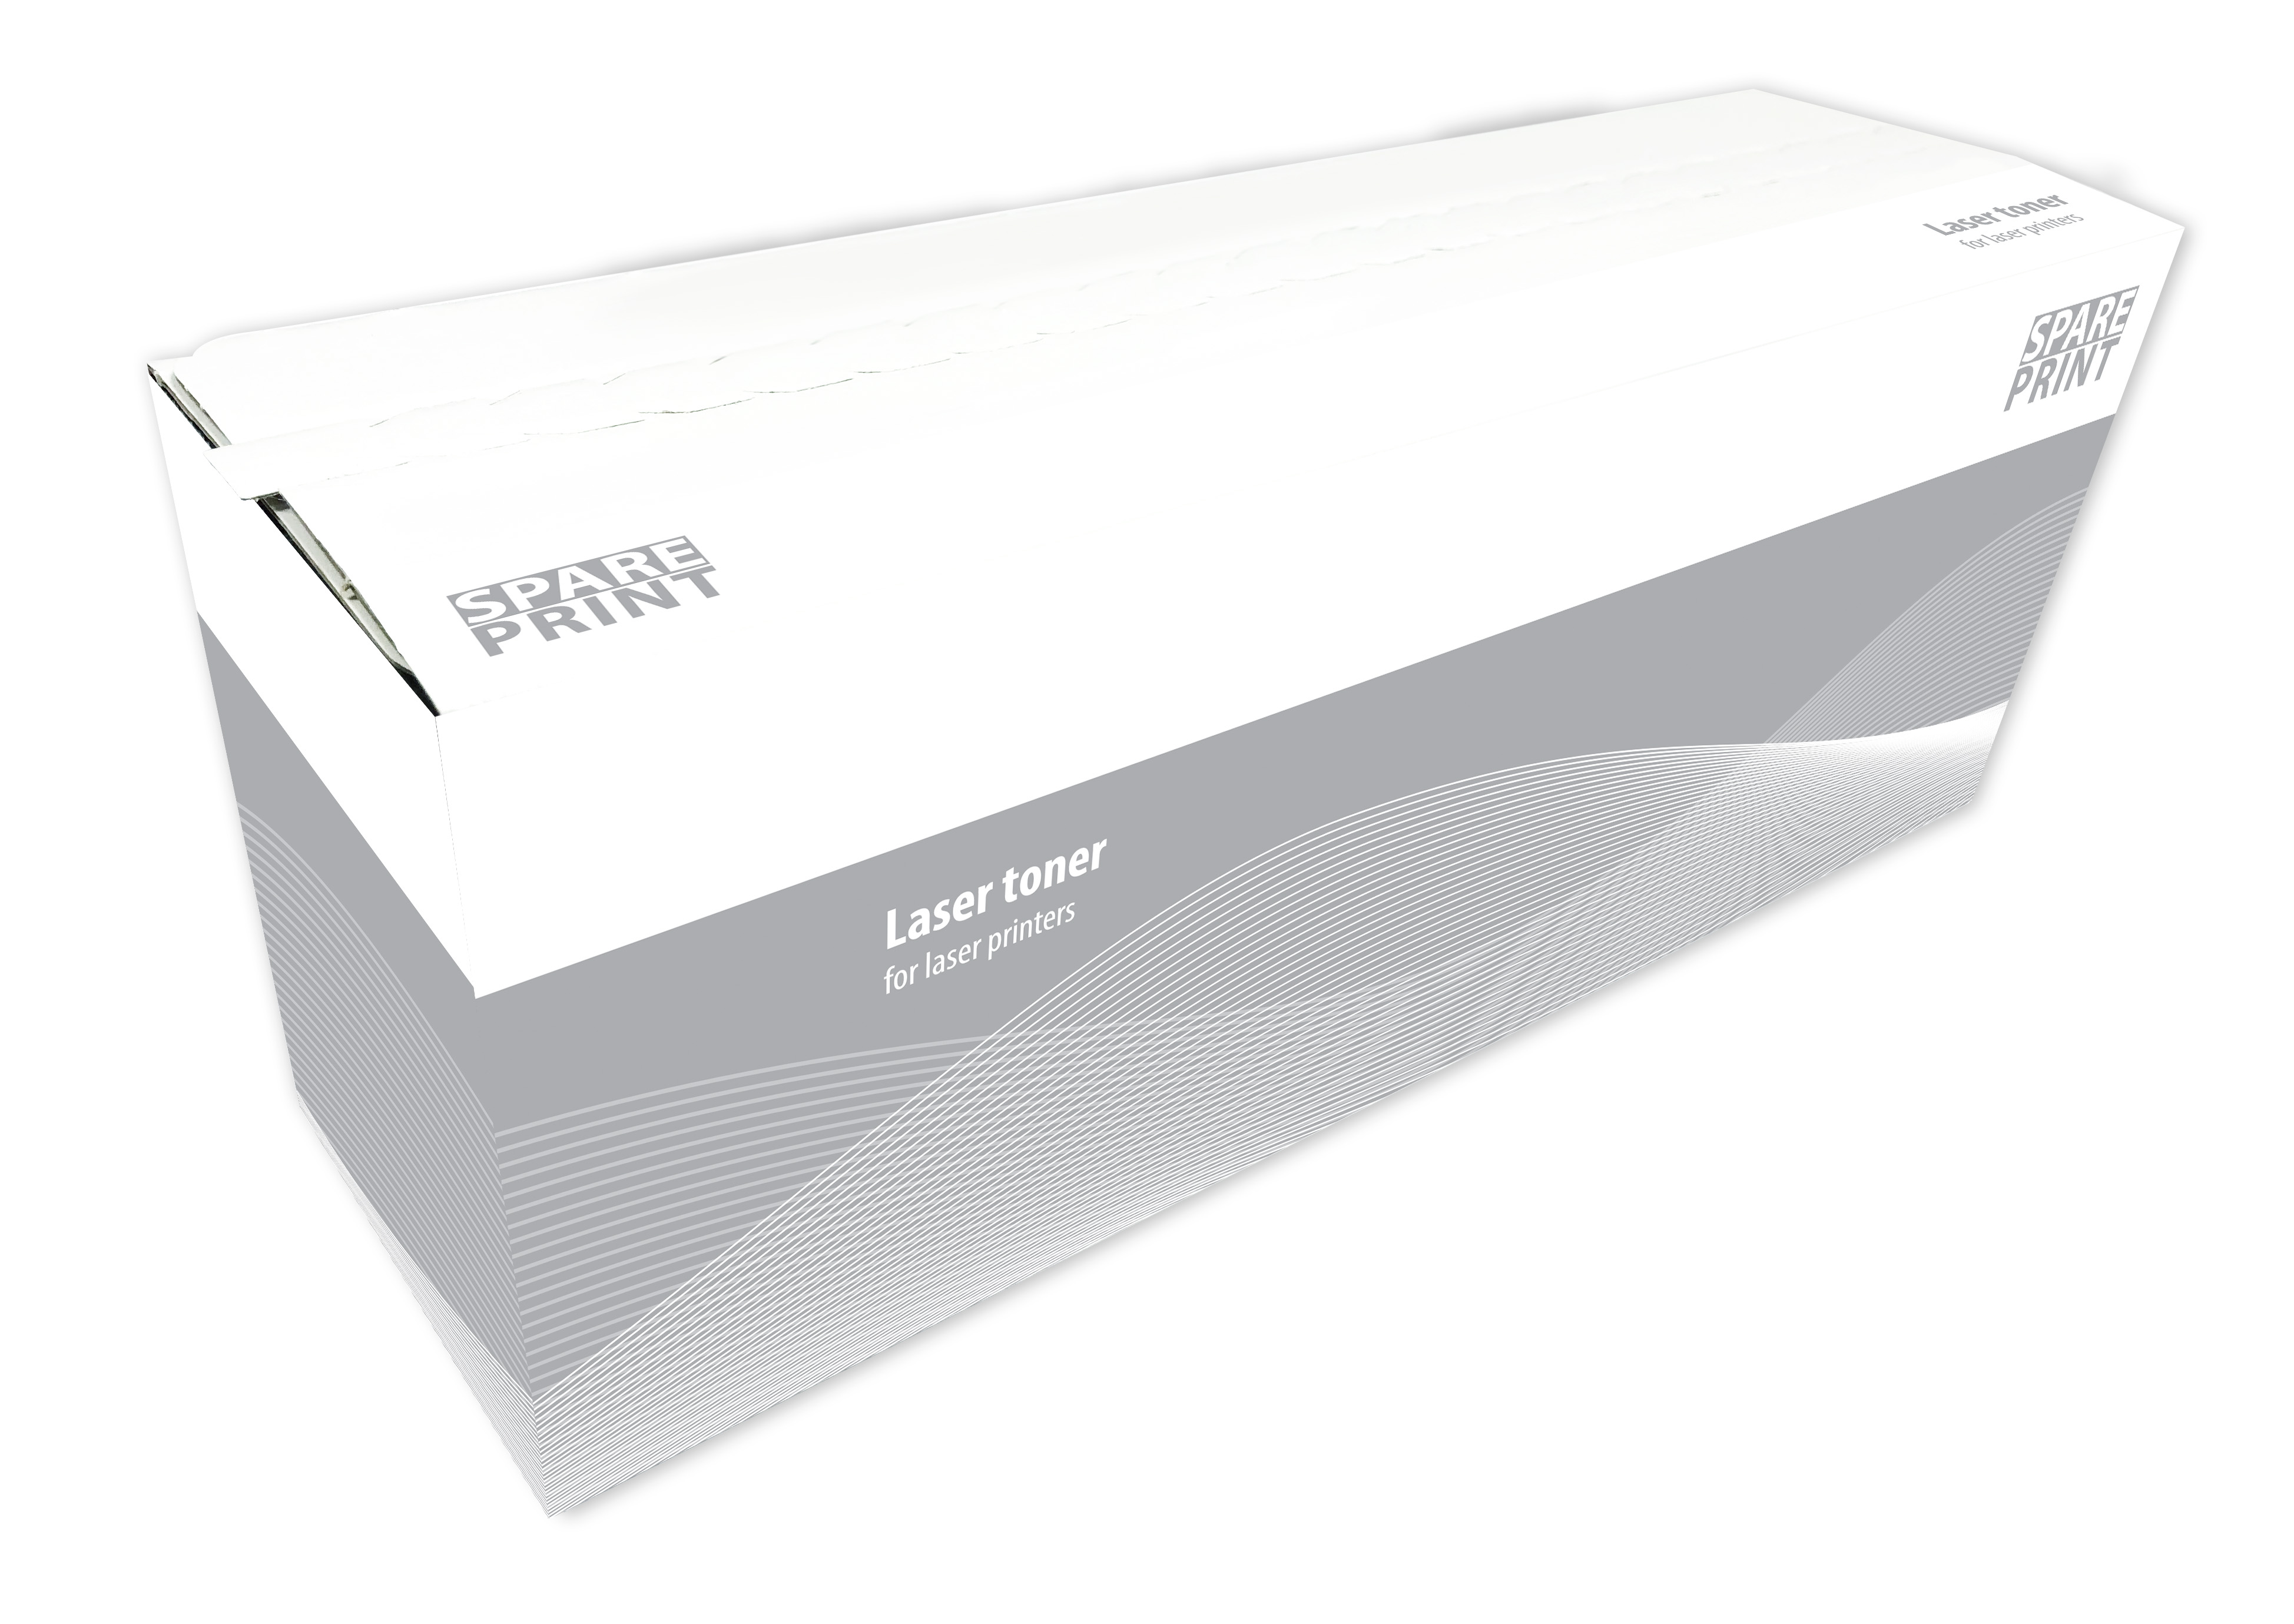 SPARE PRINT kompatibilní toner 71B20C0 Cyan pro tiskárny Lexmark